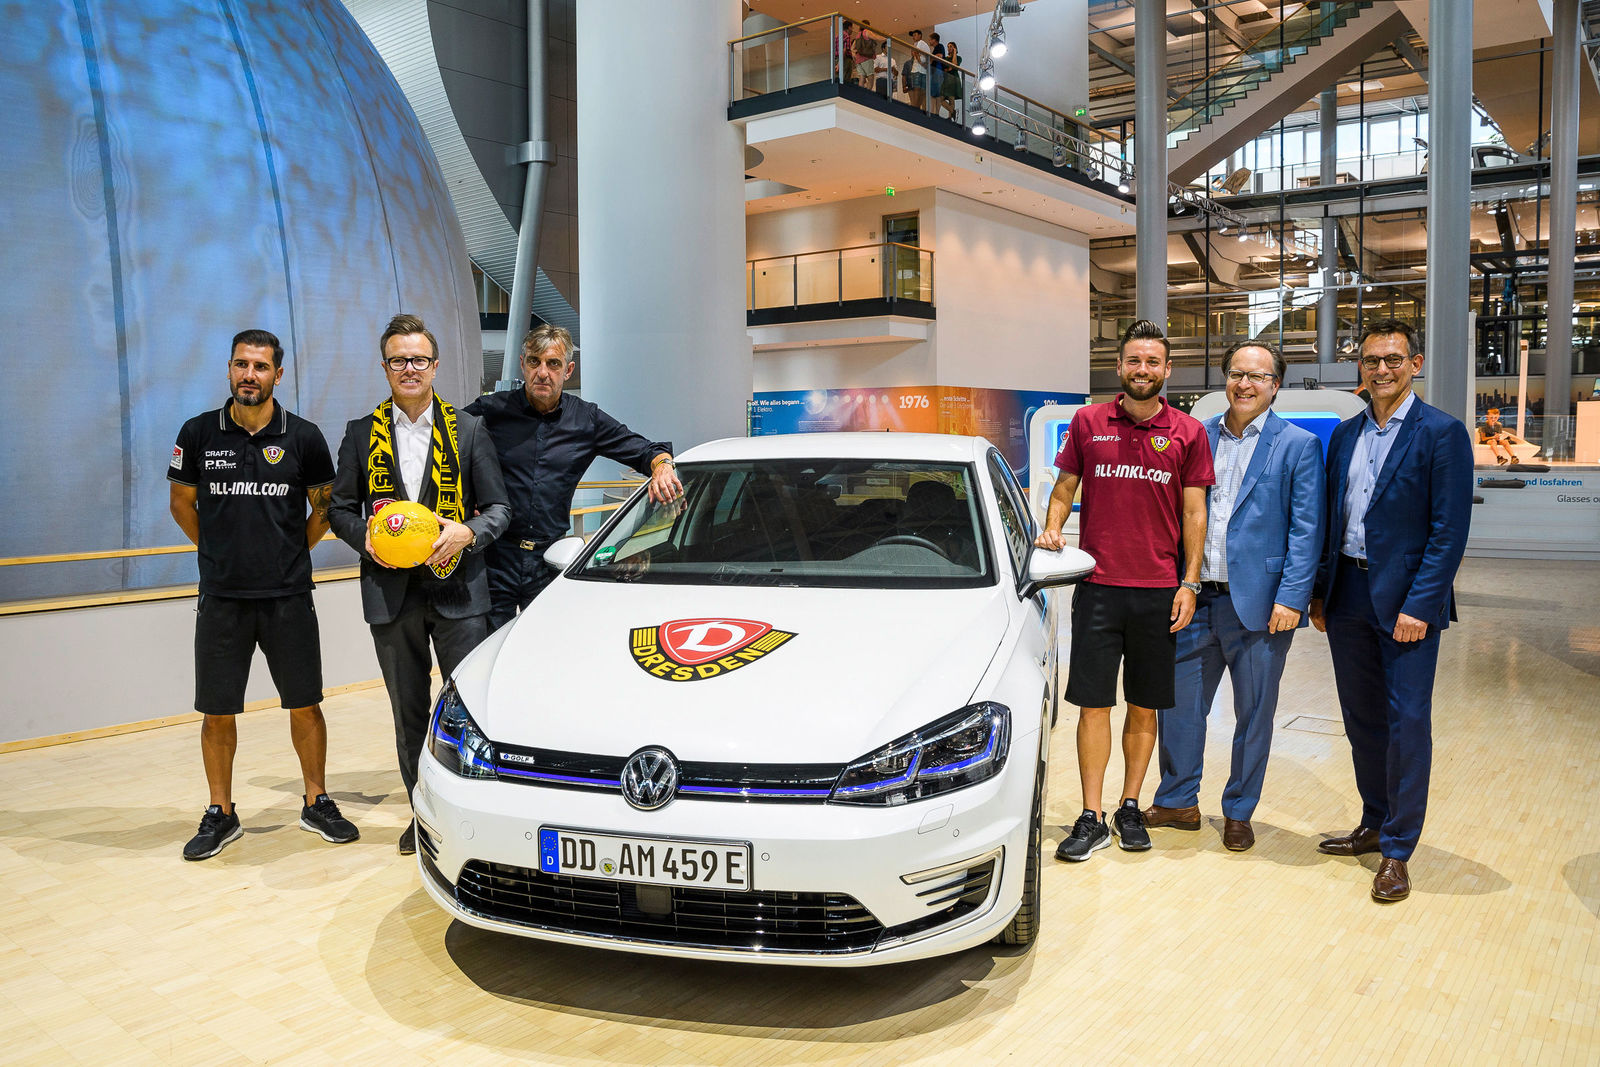 Ausweitung des Standort-Sponsorings: Volkswagen ist neuer Partner von Dynamo Dresden